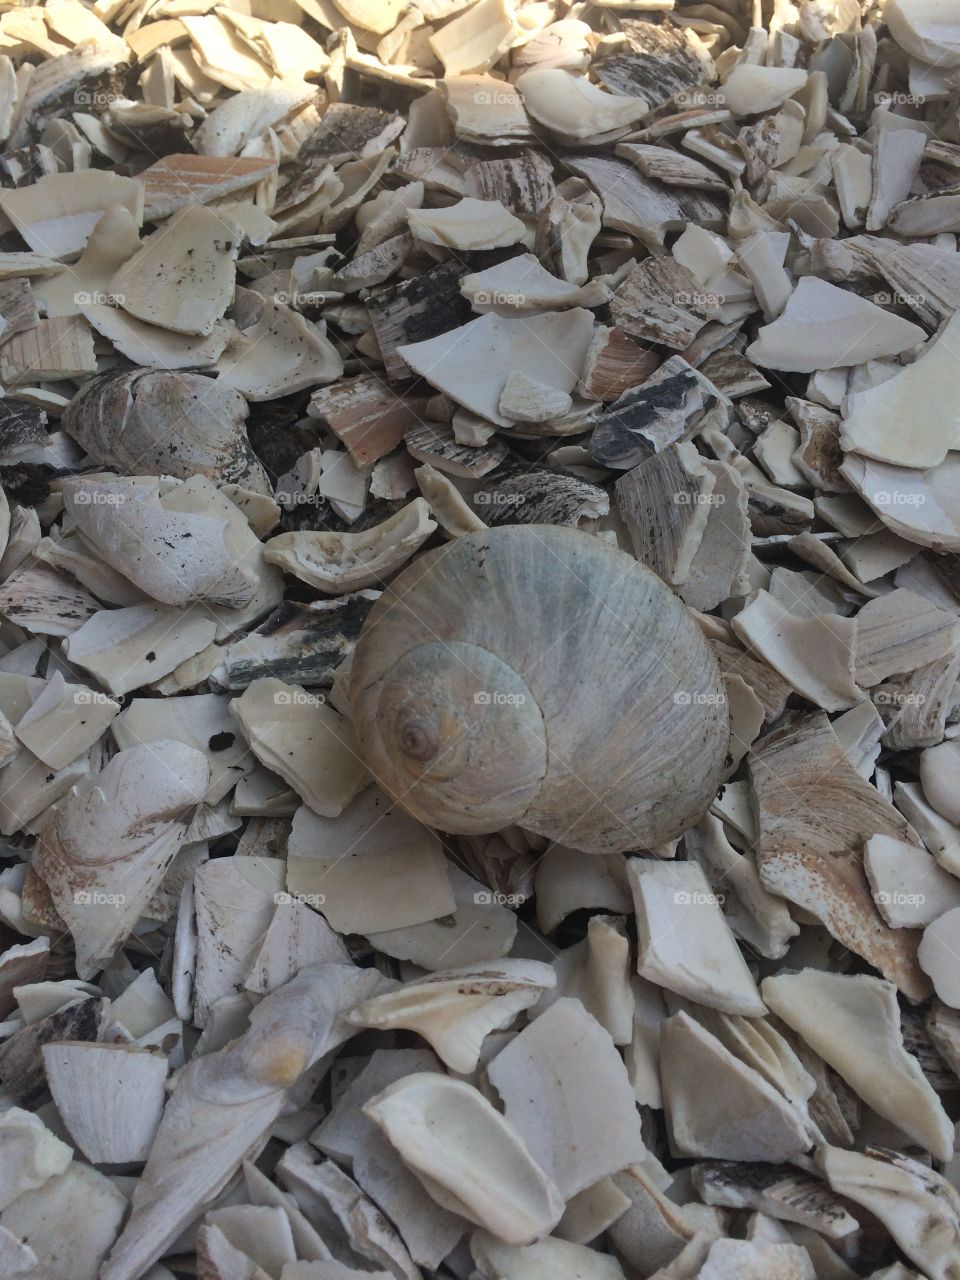 Shells
